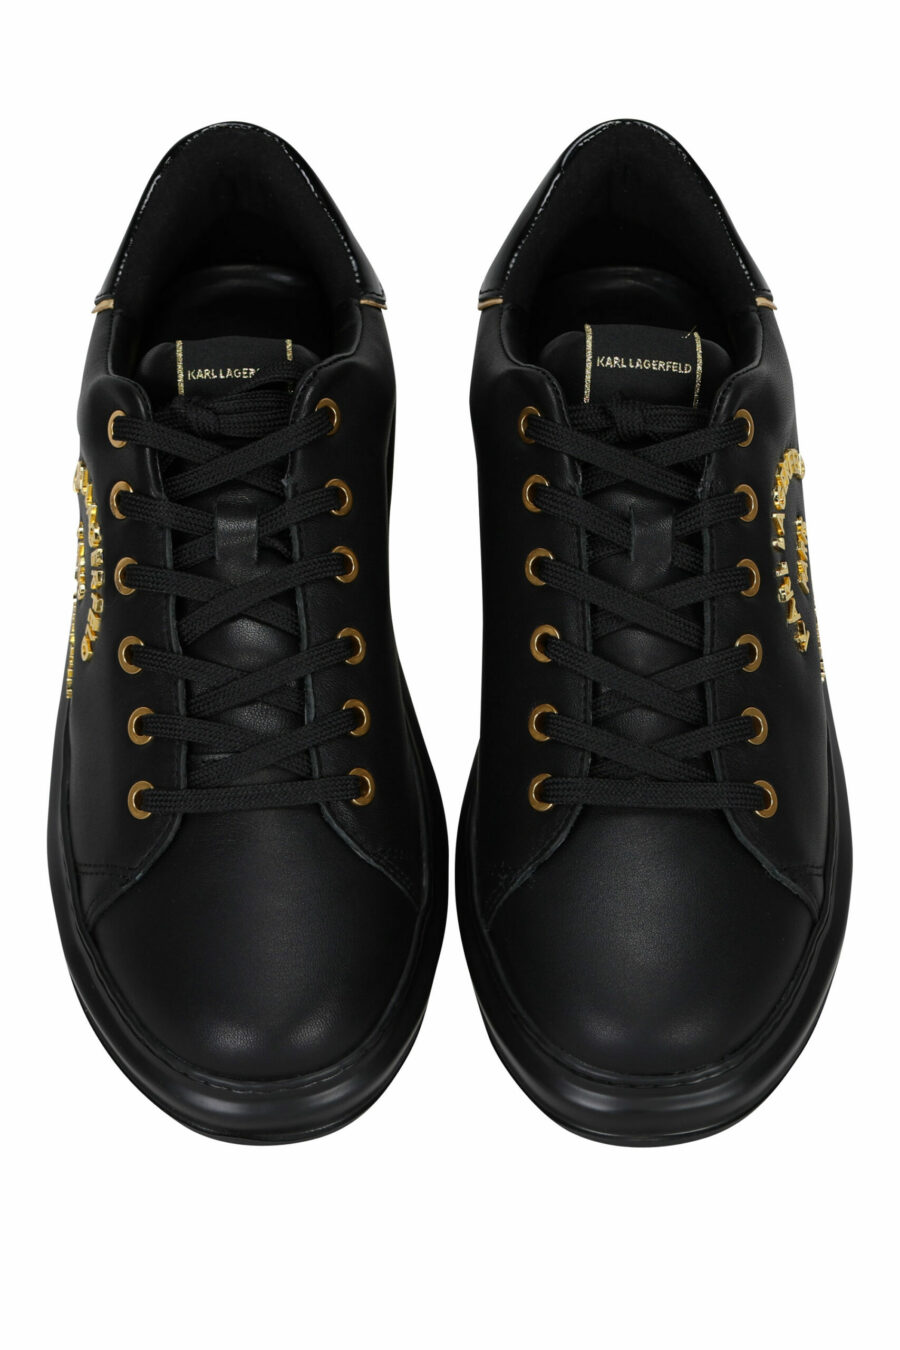 Zapatillas negras con logo "rue st guillaume" dorado en metal - 5059529362699 4 scaled